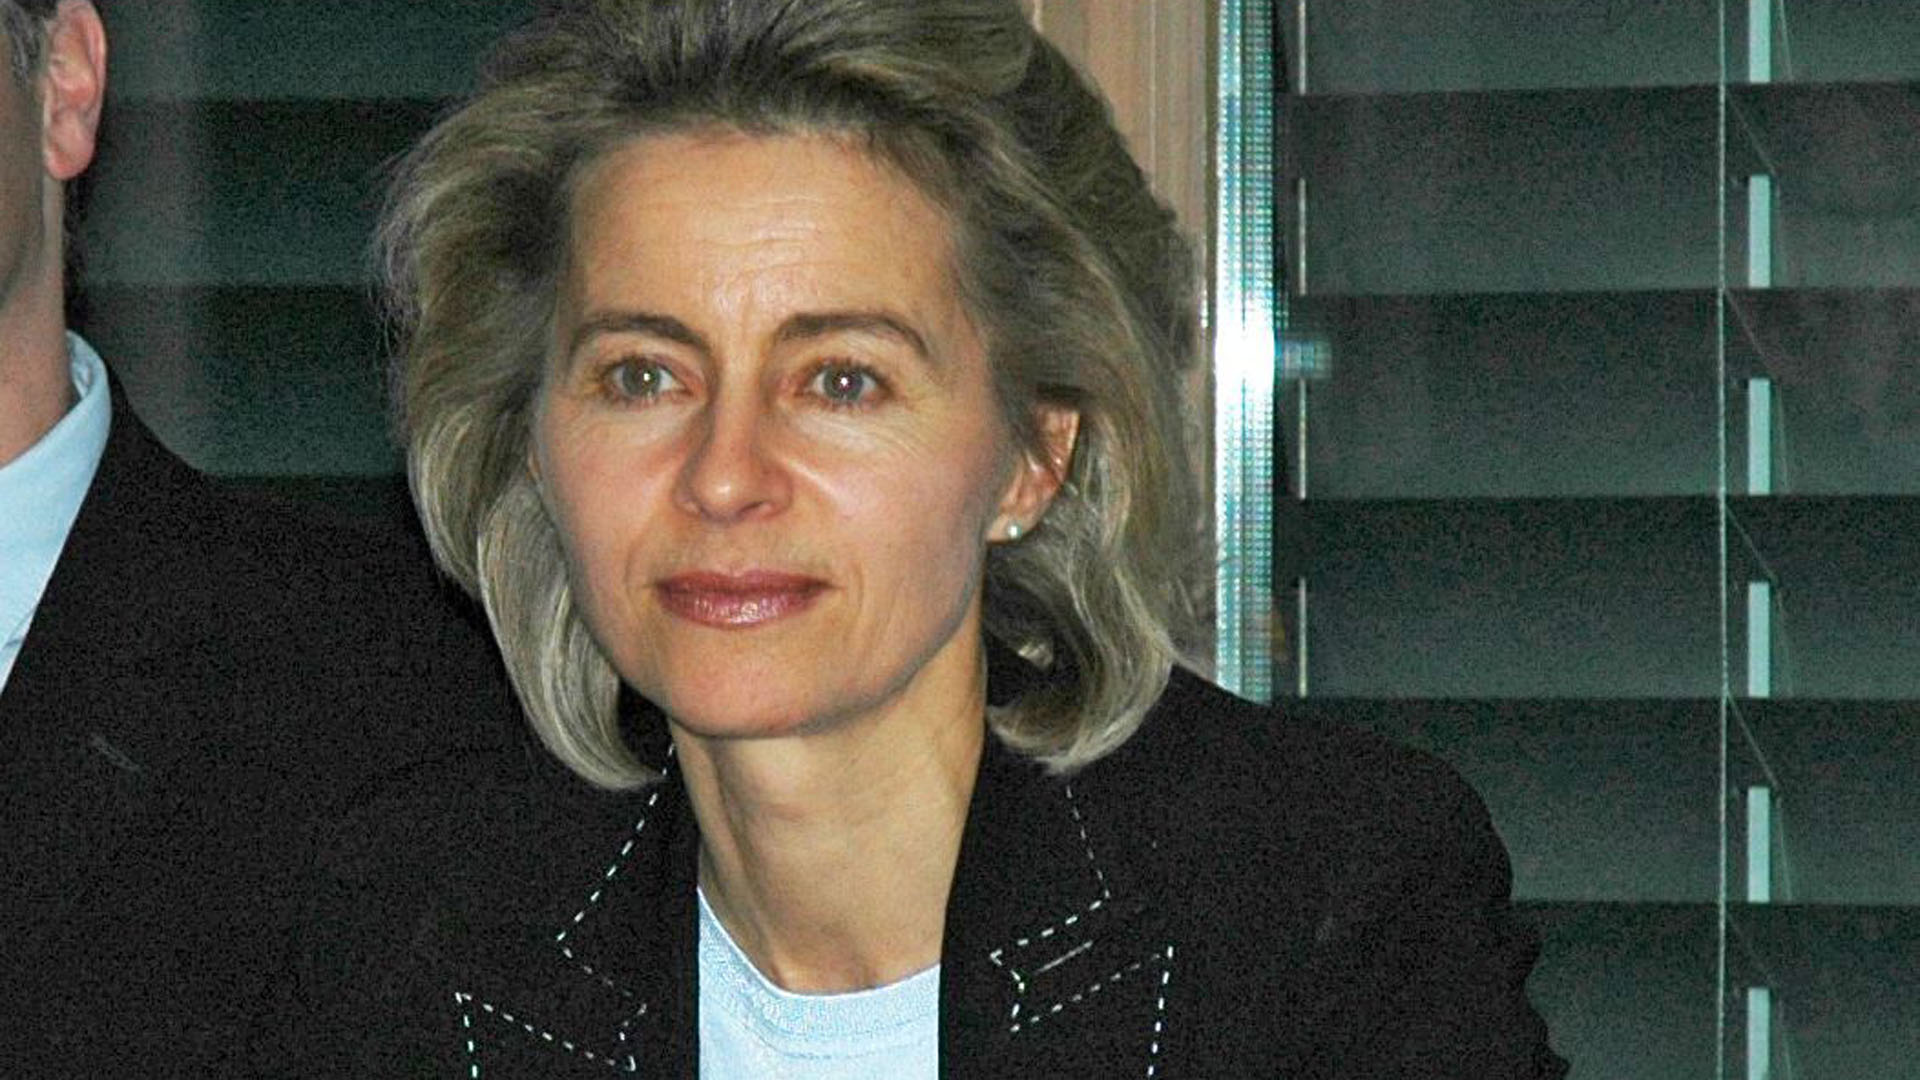 Ursula von der Leyen im Jahr 2008 bei einer Tagung des damaligen Christlichen Medienverbunds KEP: Damals war sie Bundesministerin für Familie, Senioren, Frauen und Jugend